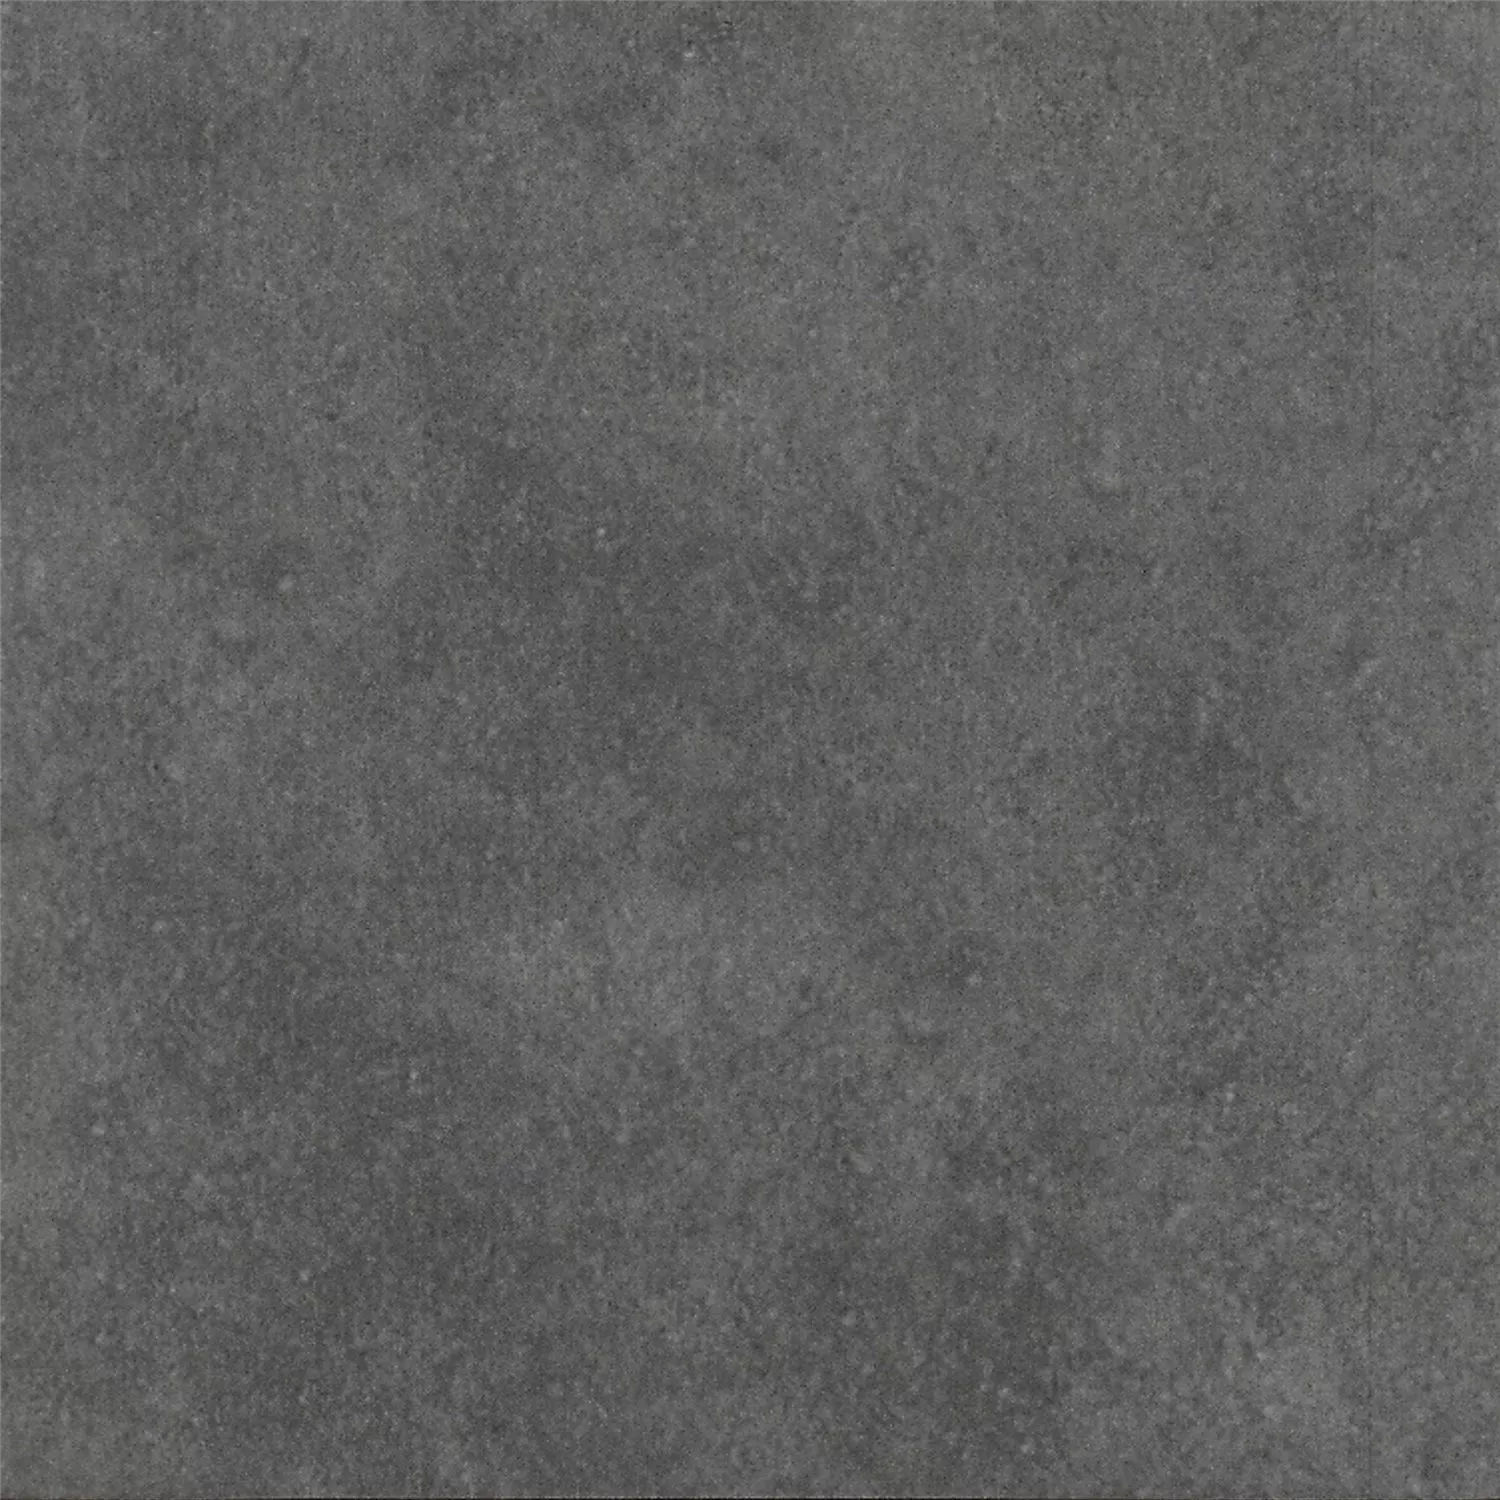 Πρότυπο Όψη Πλακιδίων Tσιμέντου Gotik Πλακάκι Bάσης Σκούρο Γκρι 22,3x22,3cm